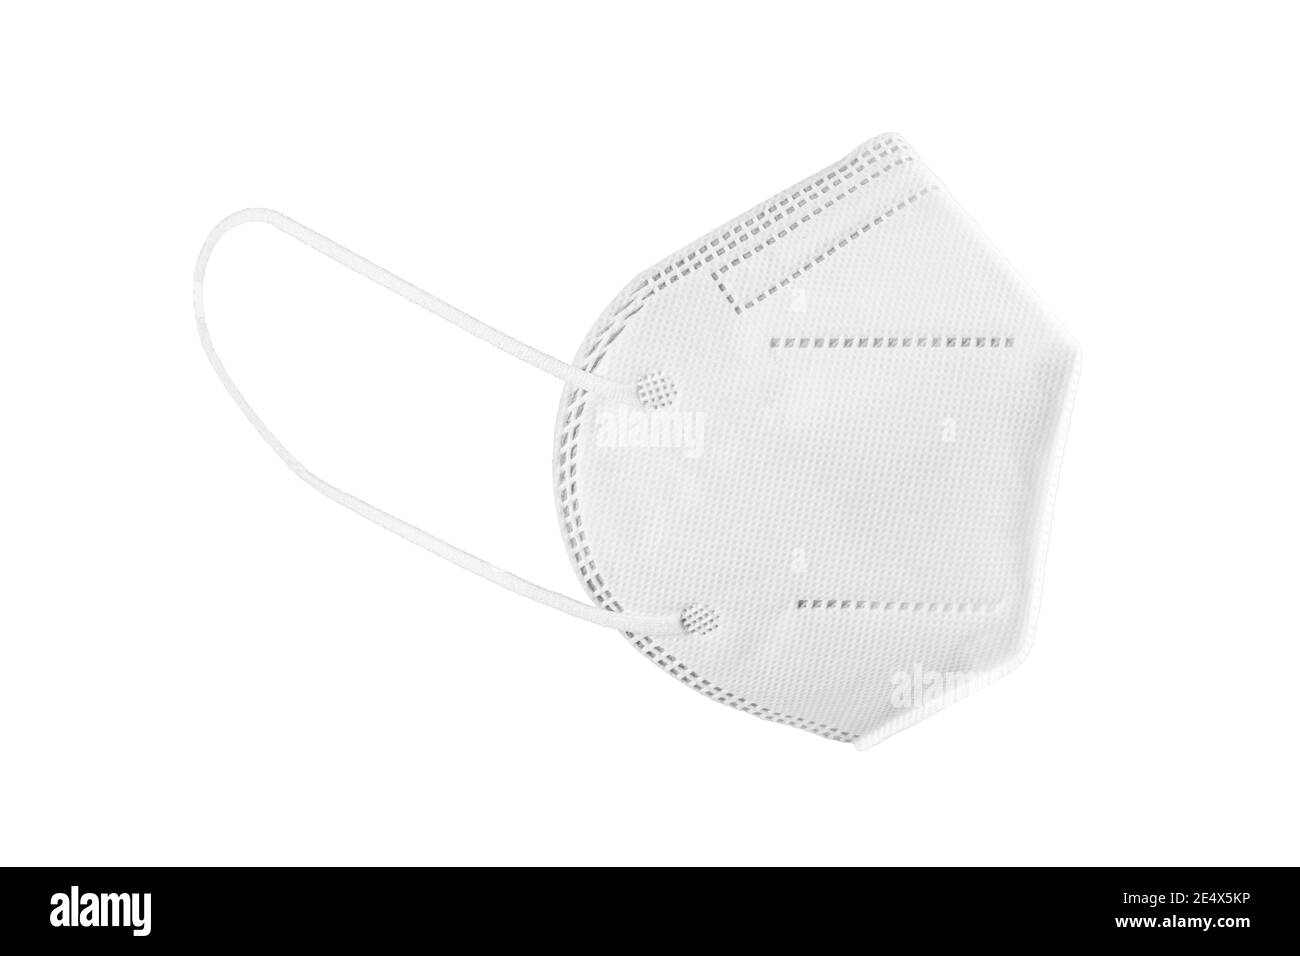 Maschera facciale KN95, FFP2, FFP3 isolata su sfondo bianco. Dispositivi di protezione individuale contro il coronavirus Covid-19 Foto Stock